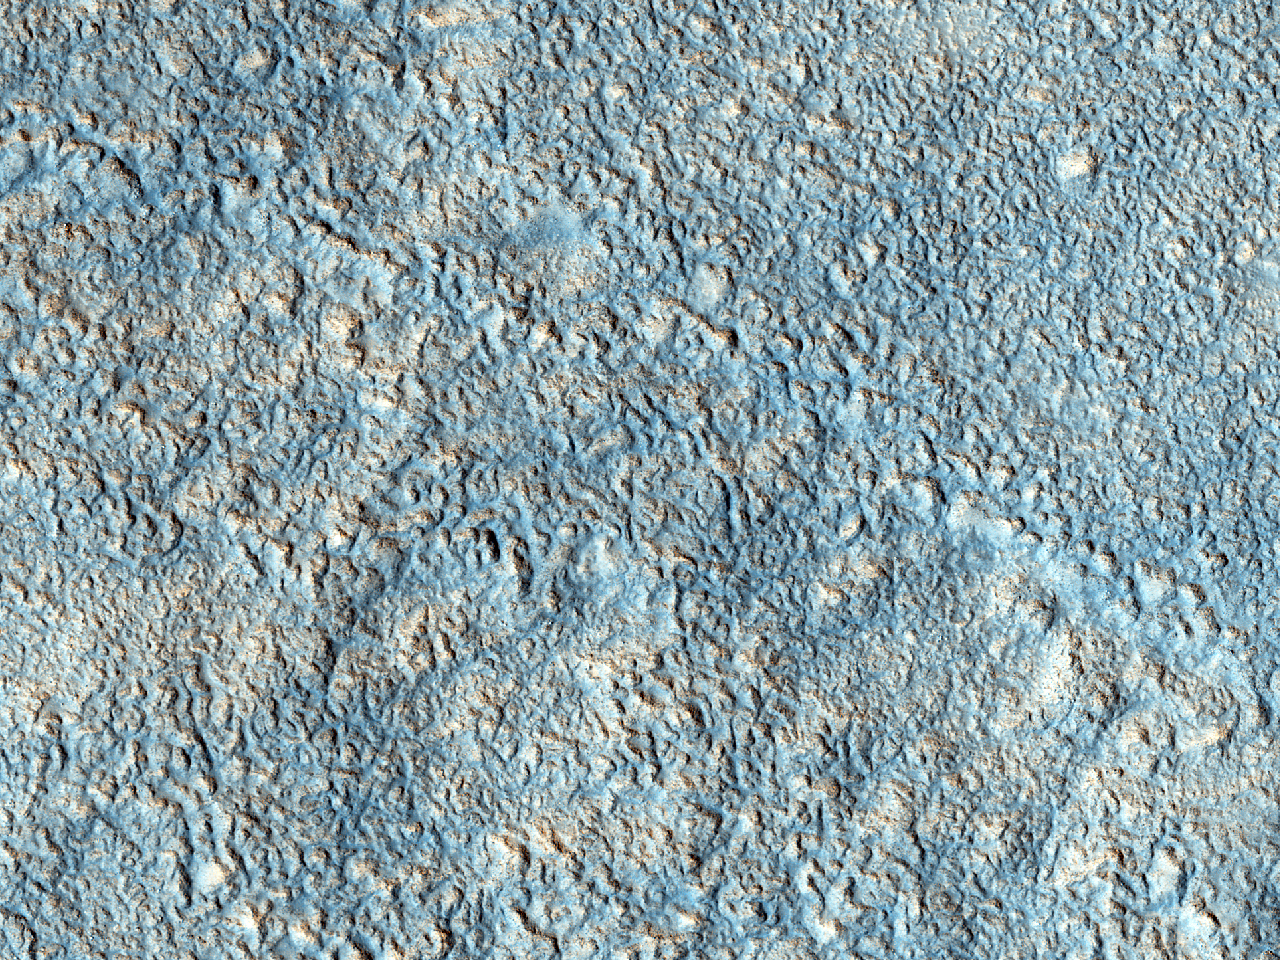 Acidalia Planitia’da bulunan engebeli arazi